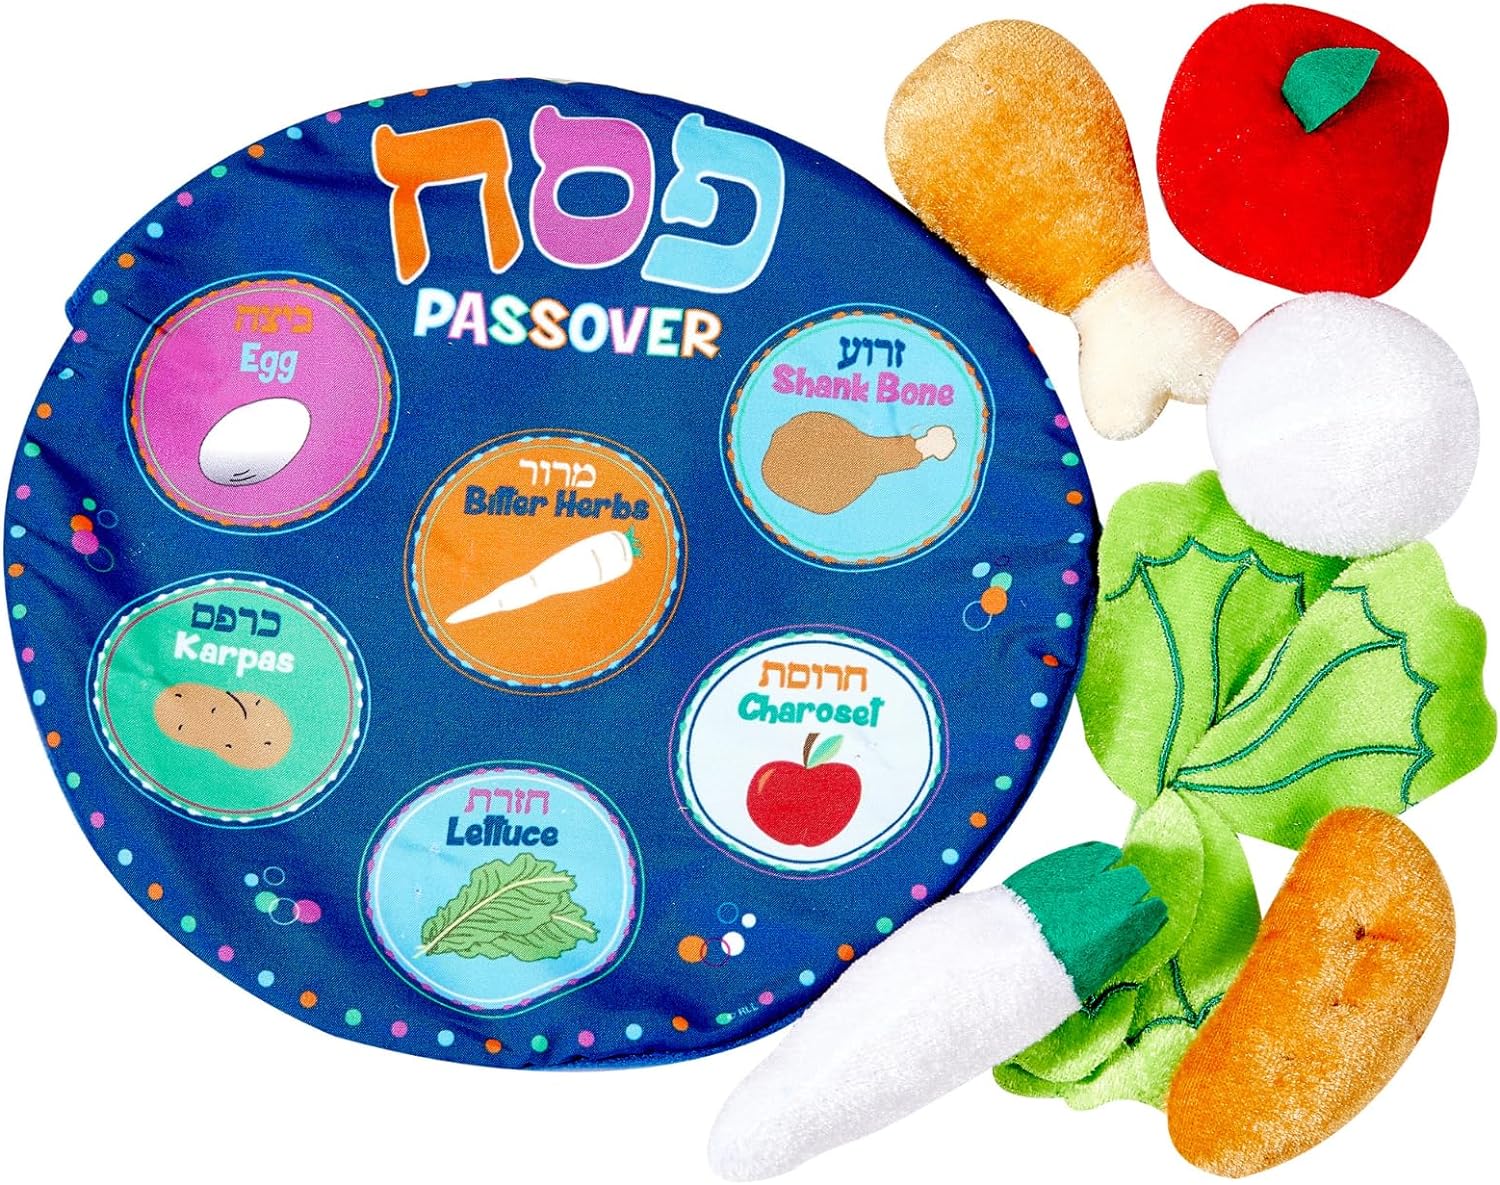 Best Jewish Books - Seder plate toy 2